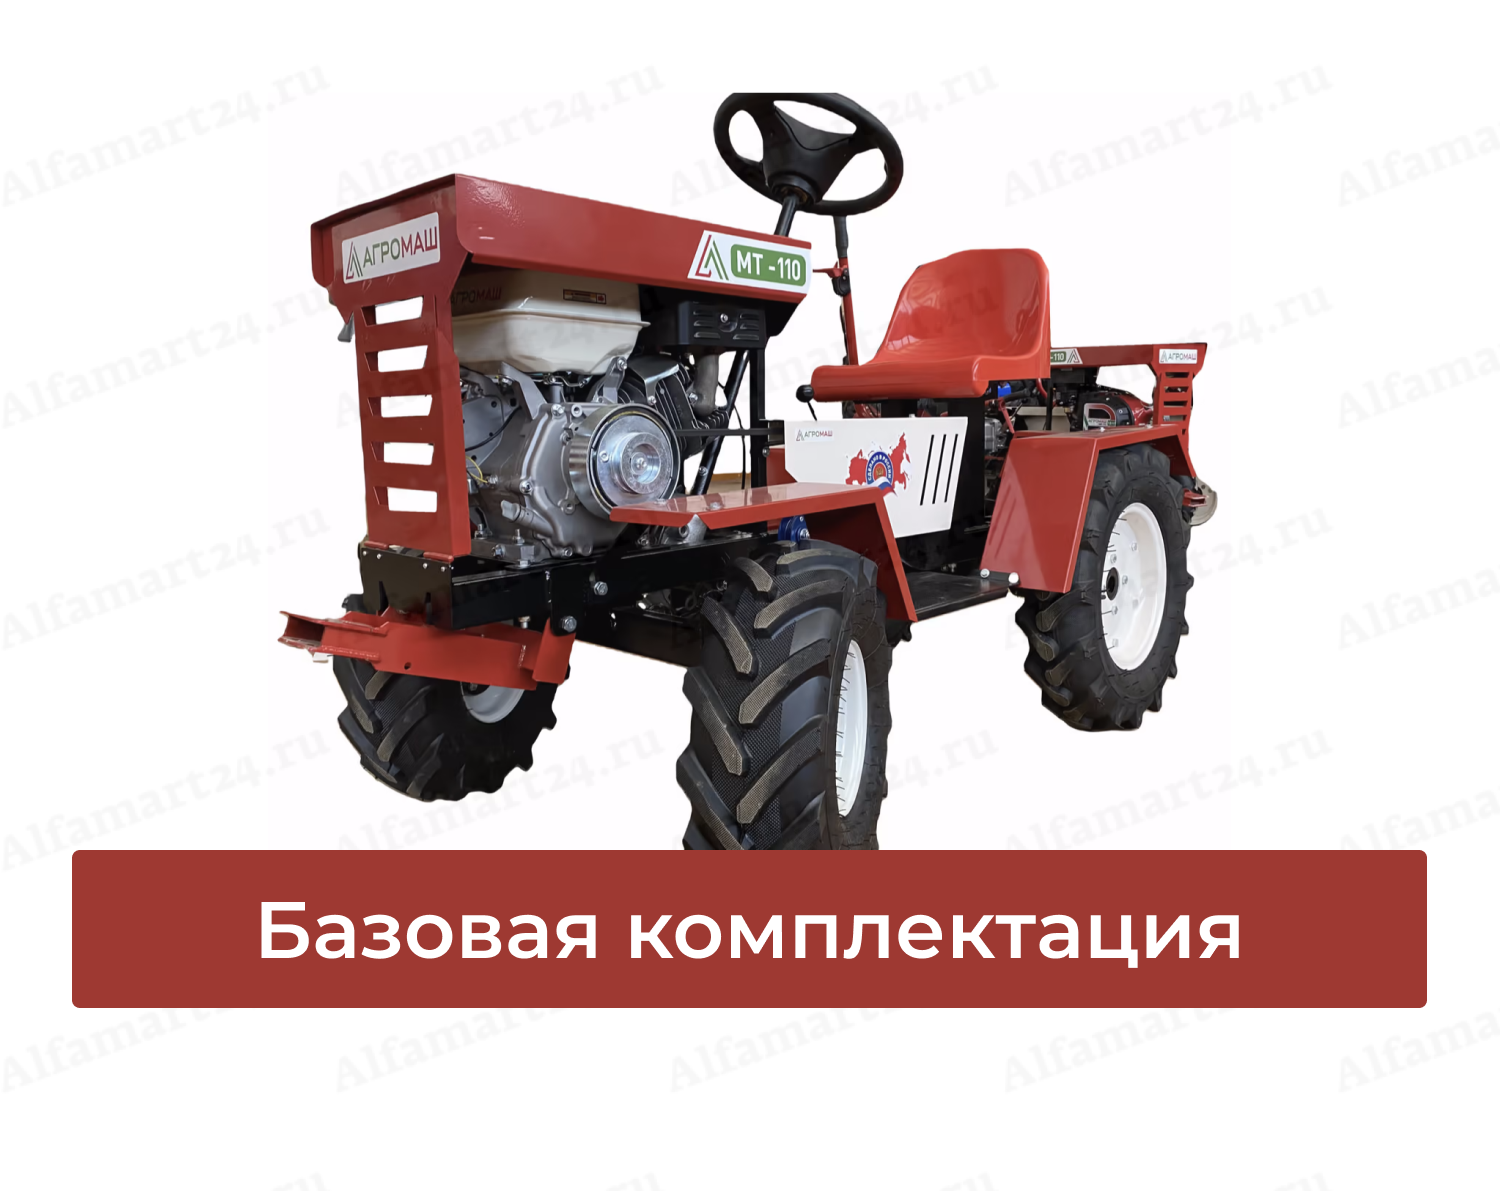 Минитрактор цена в москве и области трактор подержанный купить